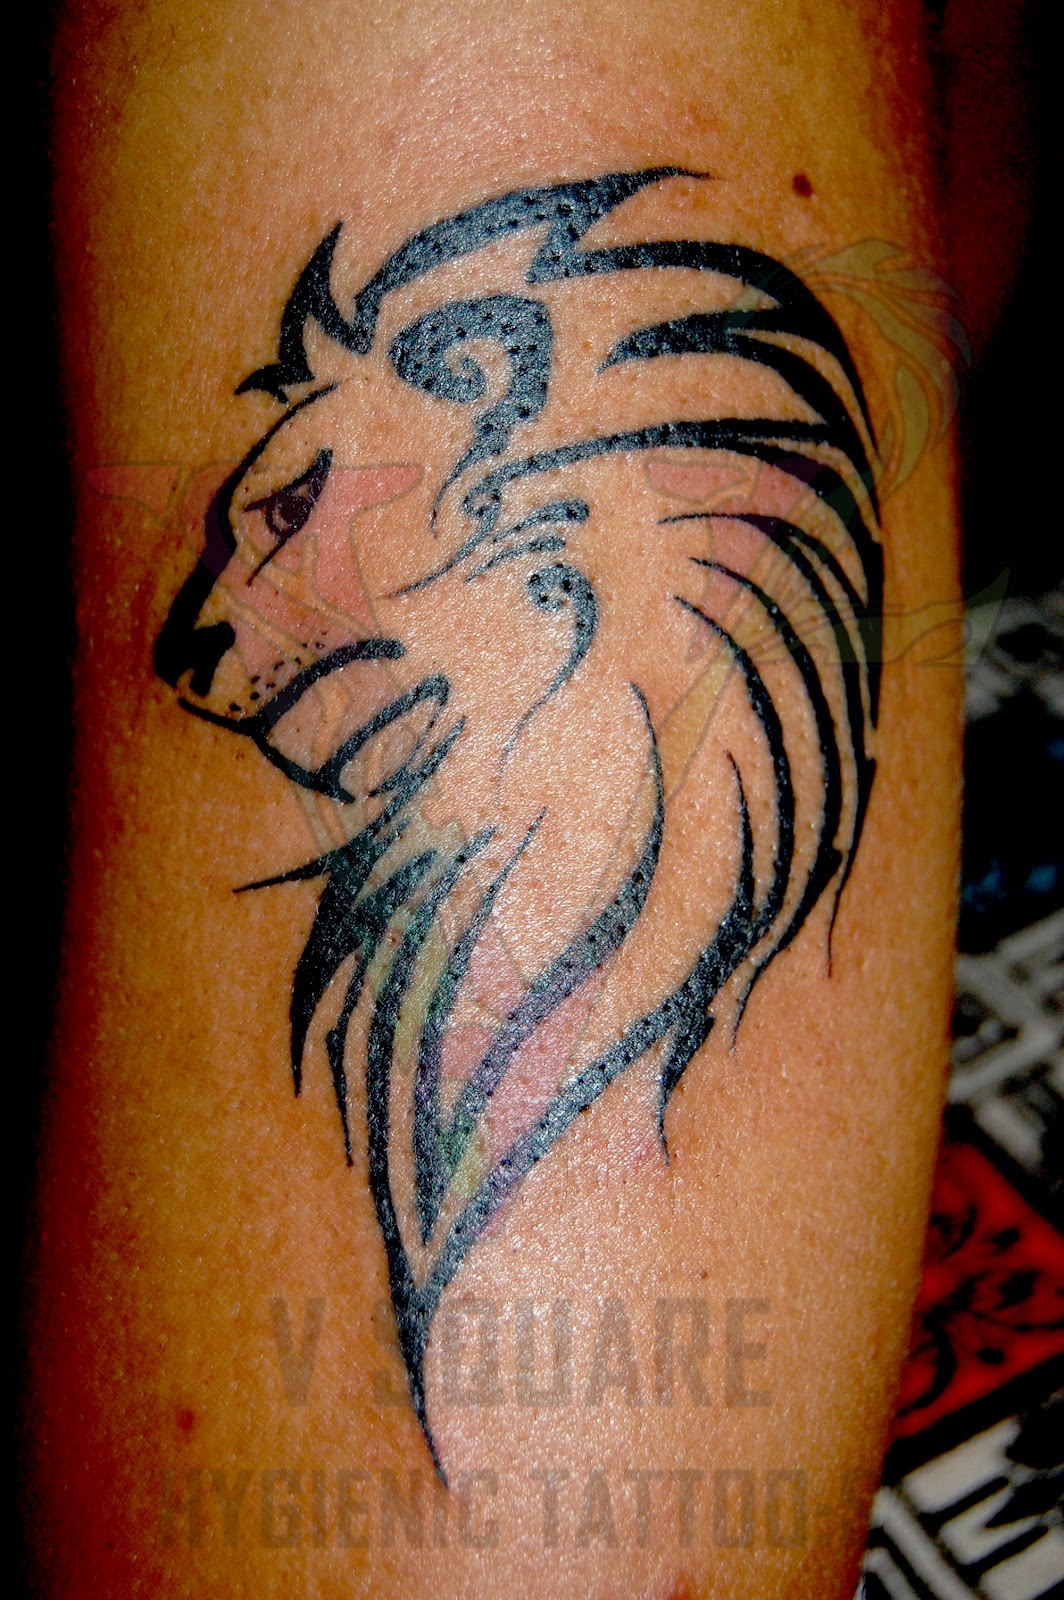 http://2.bp.blogspot.com/-3KCHa68hmrk/T0NU-yXNF_I/AAAAAAAAADw/pNjJxx4XdK0/s1600/lion_tattoo.jpg